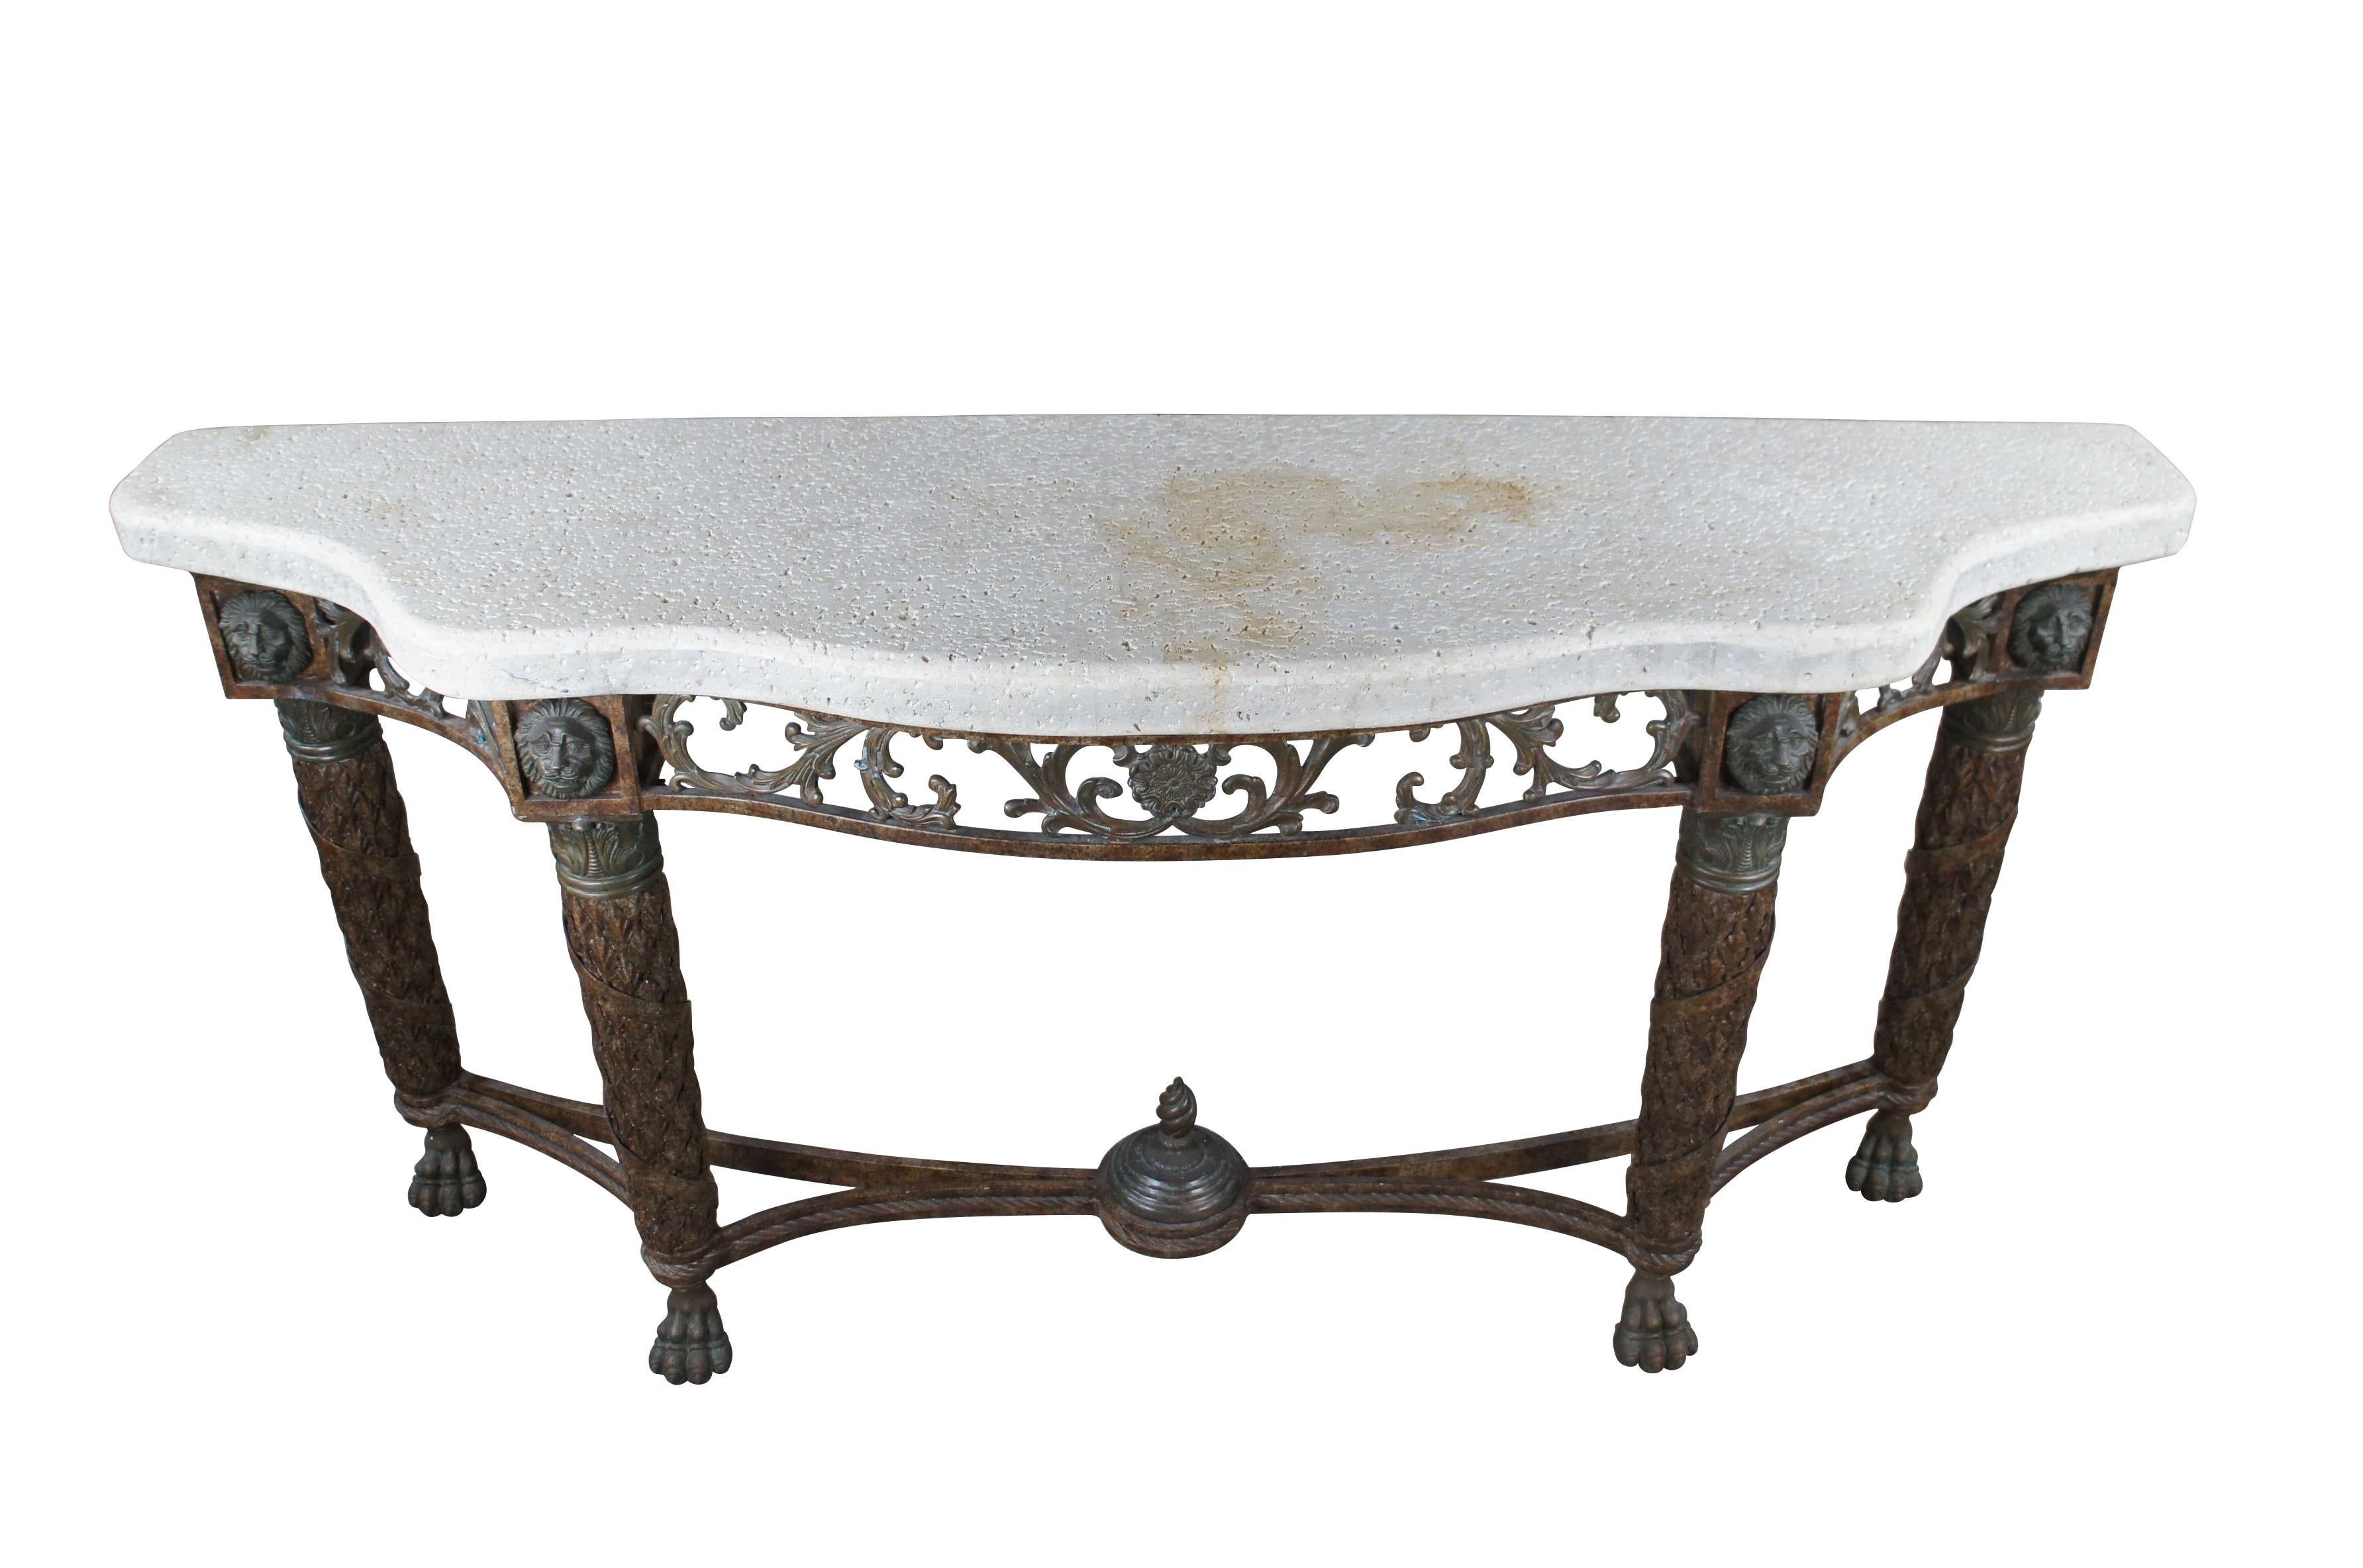 Exceptionnelle table console / buffet en serpentine d'inspiration Louis XVI de Maitland Smith, datant de la fin du 20e siècle.  Fabriqué en fer avec un dessus en pierre poreuse.  La table robuste est soutenue par quatre pieds fuselés, recouverts de